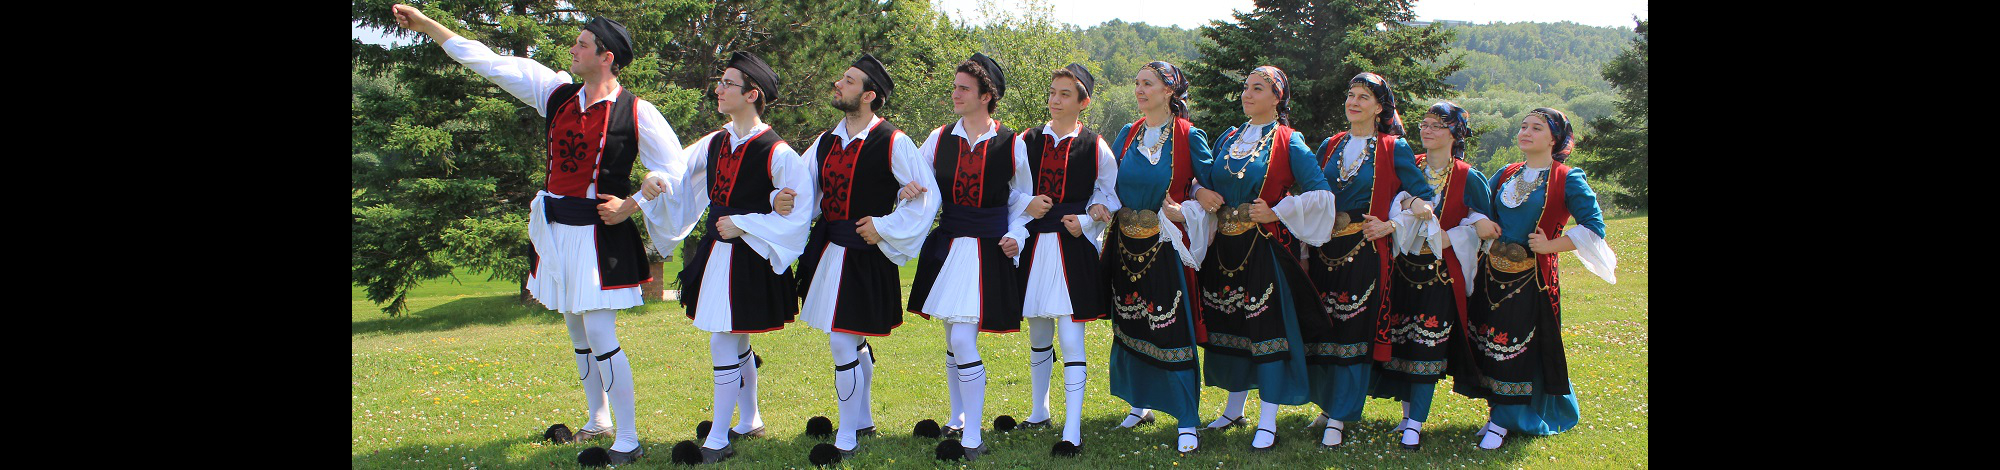 The Greek Dancers of Minnesota ΟΙ ΕΛΛΗΝΕΣ ΧΟΡΕΥΤΕΣ